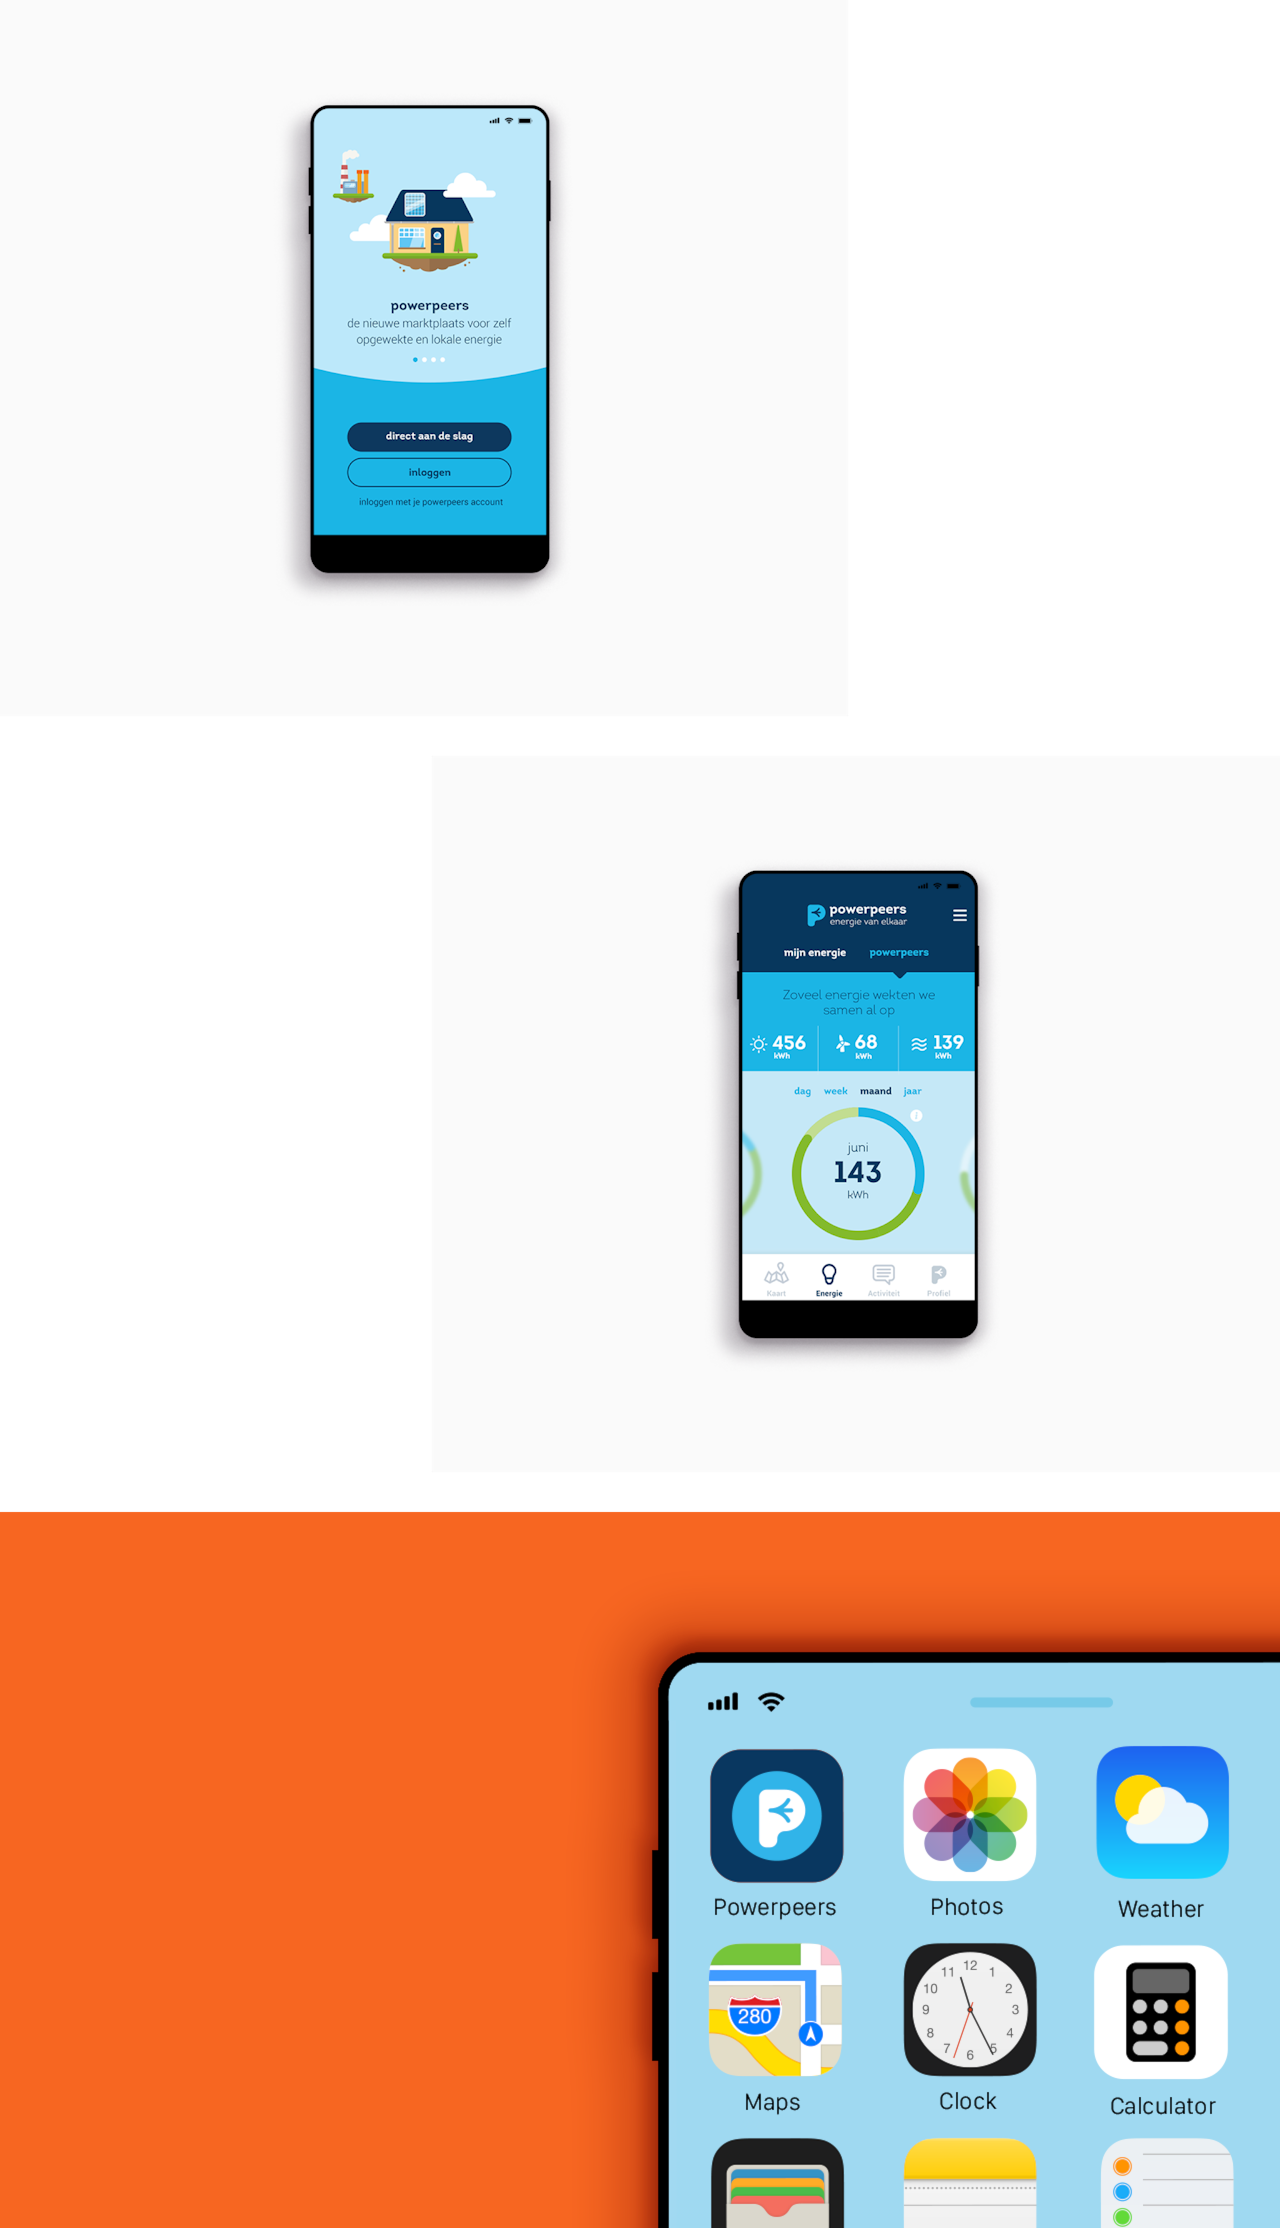 Twee schermen van mobiele telefoons met voorbeelden van de Powerpeers app. Een beeld van een mobiele telefoon met het app icoon van Powerpeers.